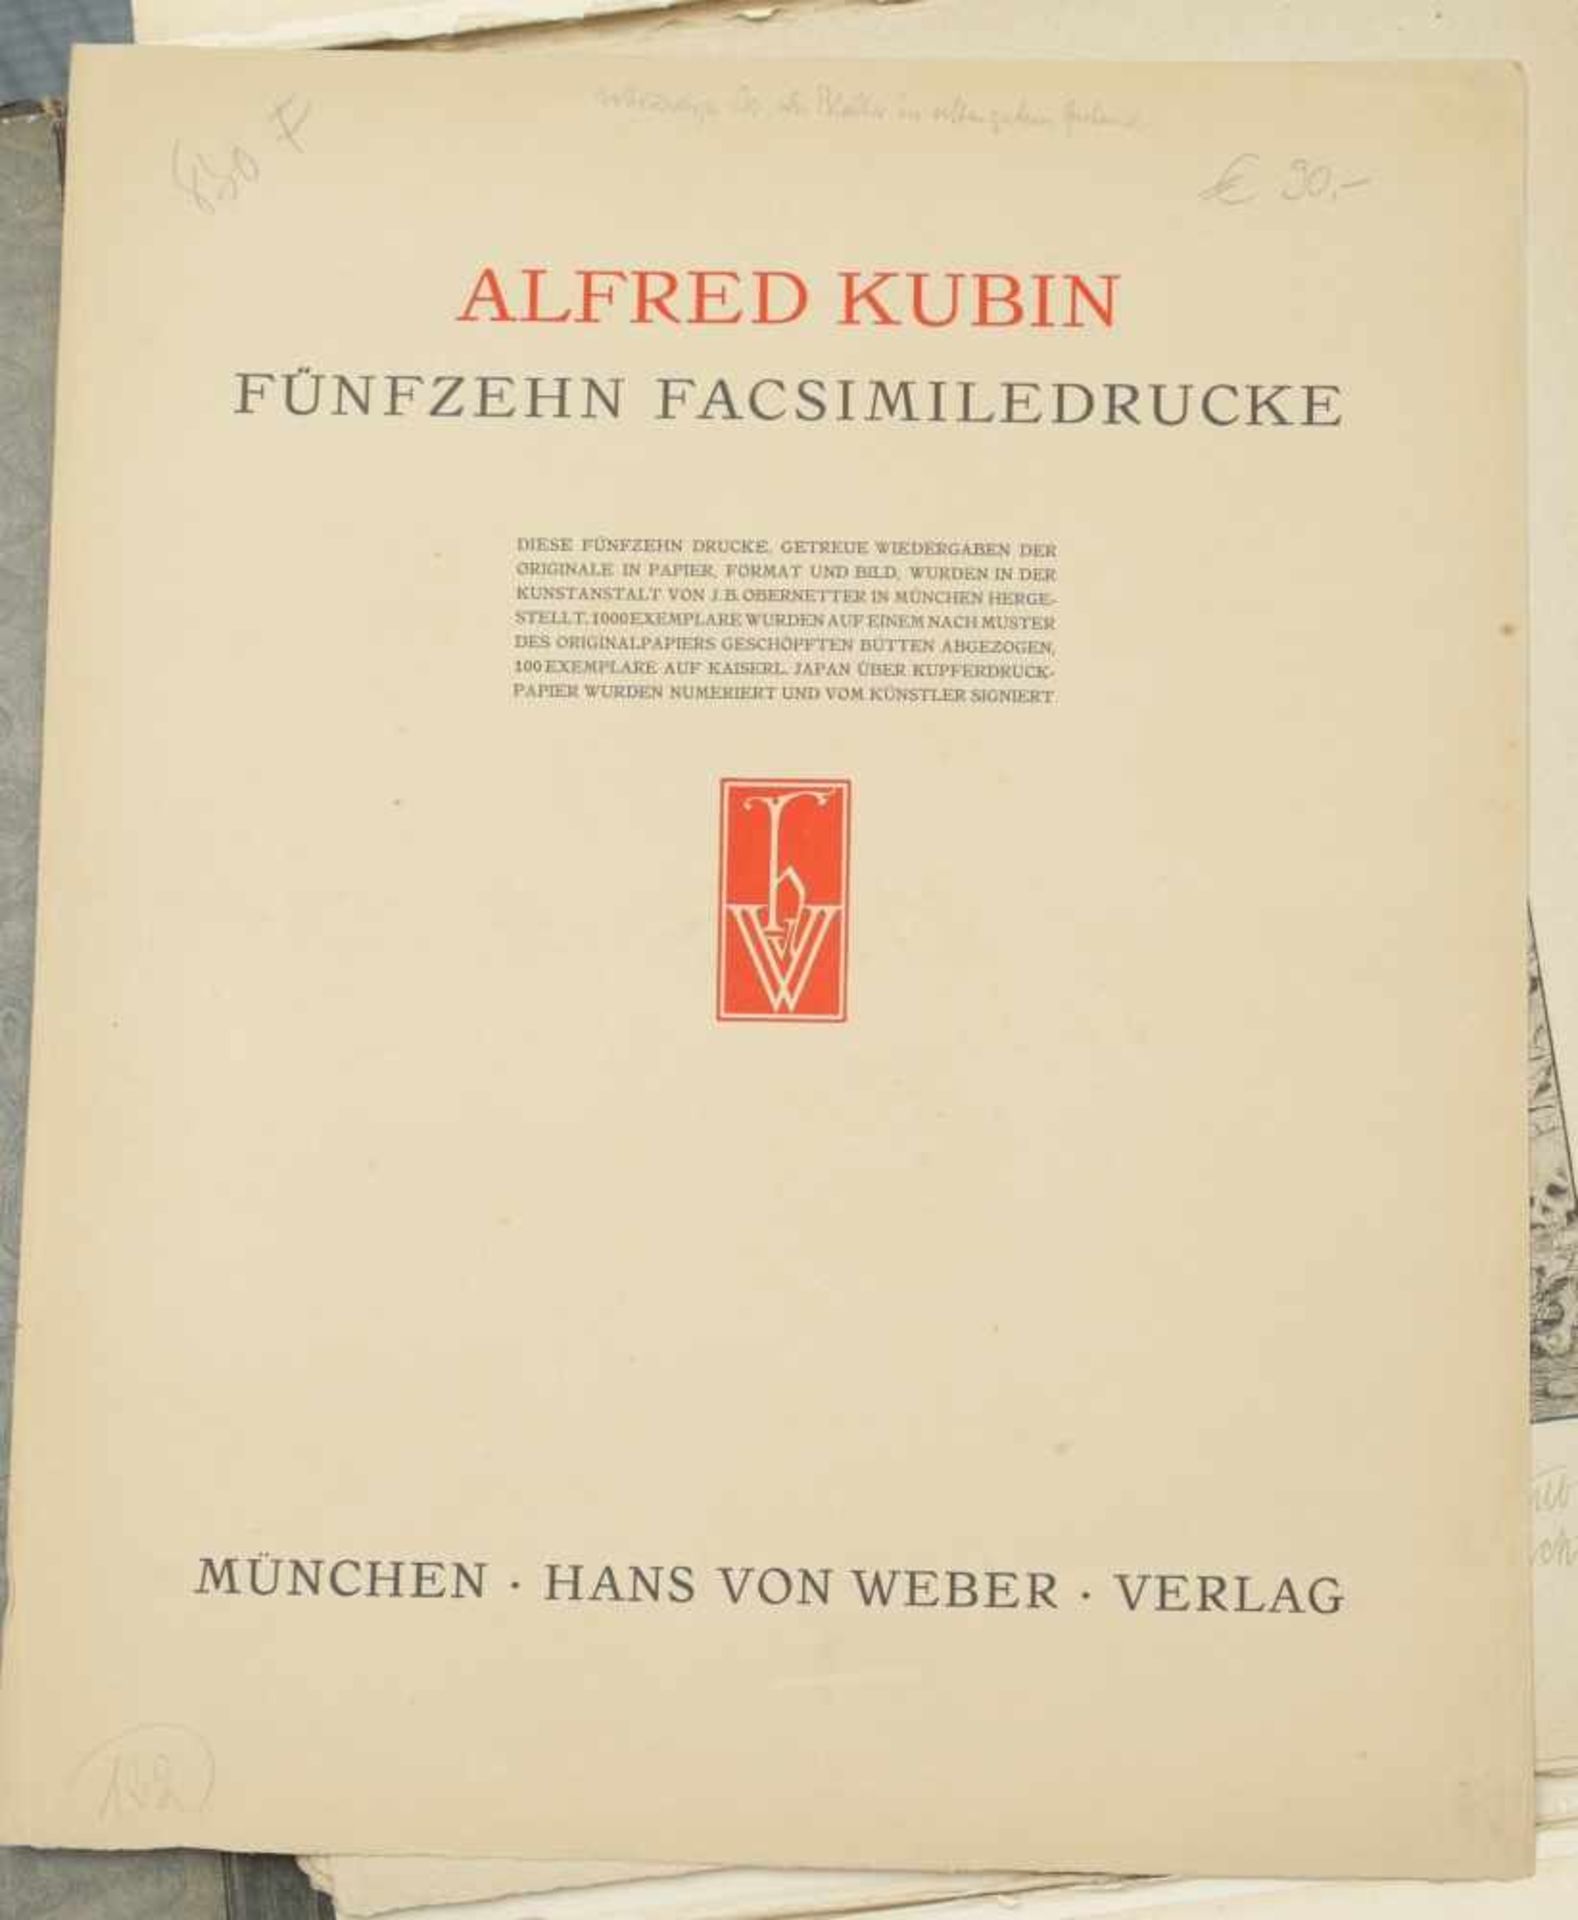 Kubin, Alfred (1877-1959) - Mappe Fünfzehn Facsimiledrucke München 1903Diese seltene und frühe